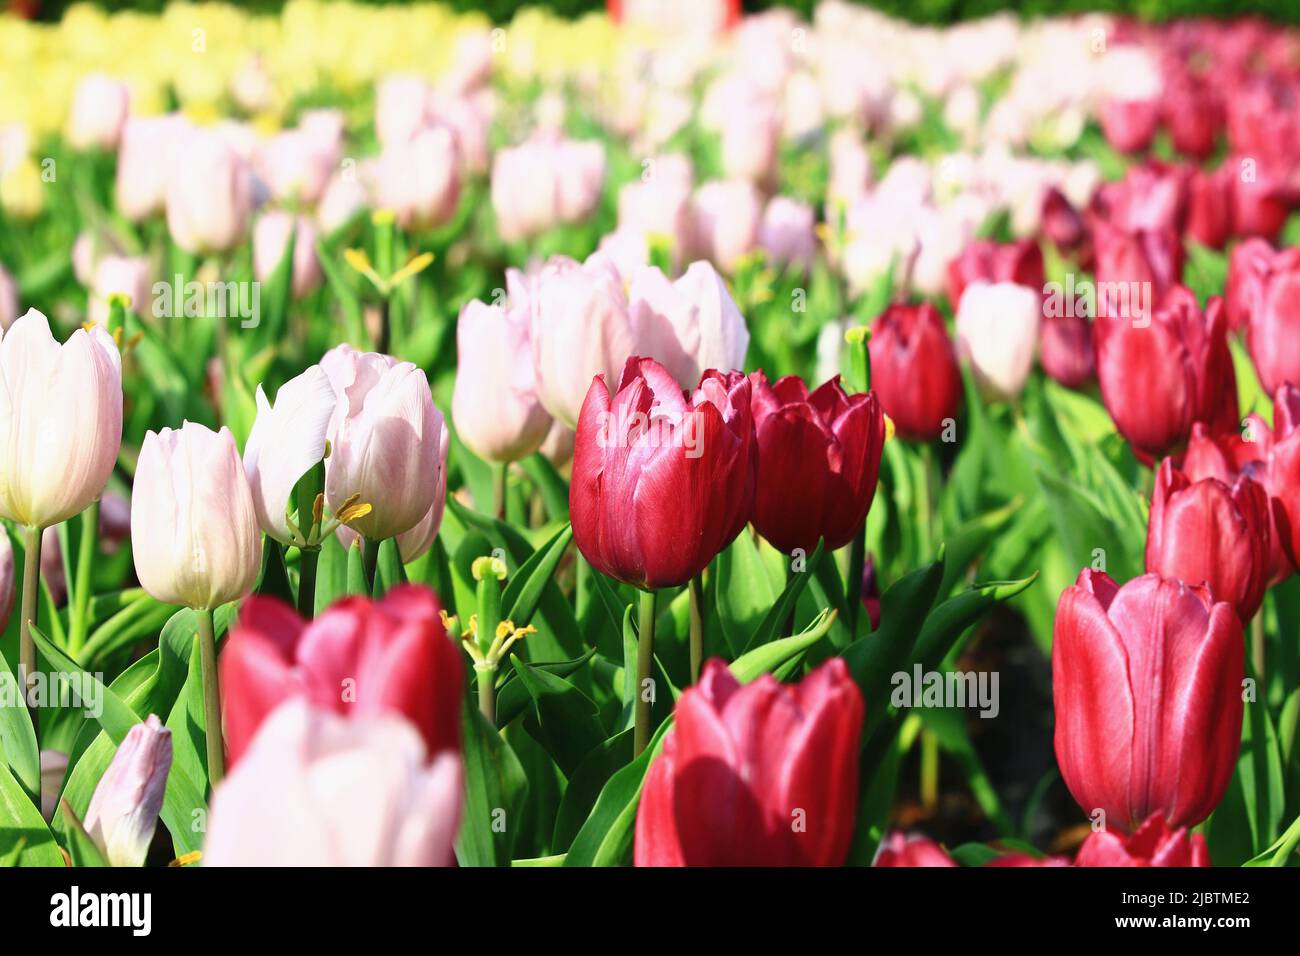 Fioritura di colorati fiori tulipani, bellissimi fiori tulipani rossi e rosa che sbocciano in giardino Foto Stock